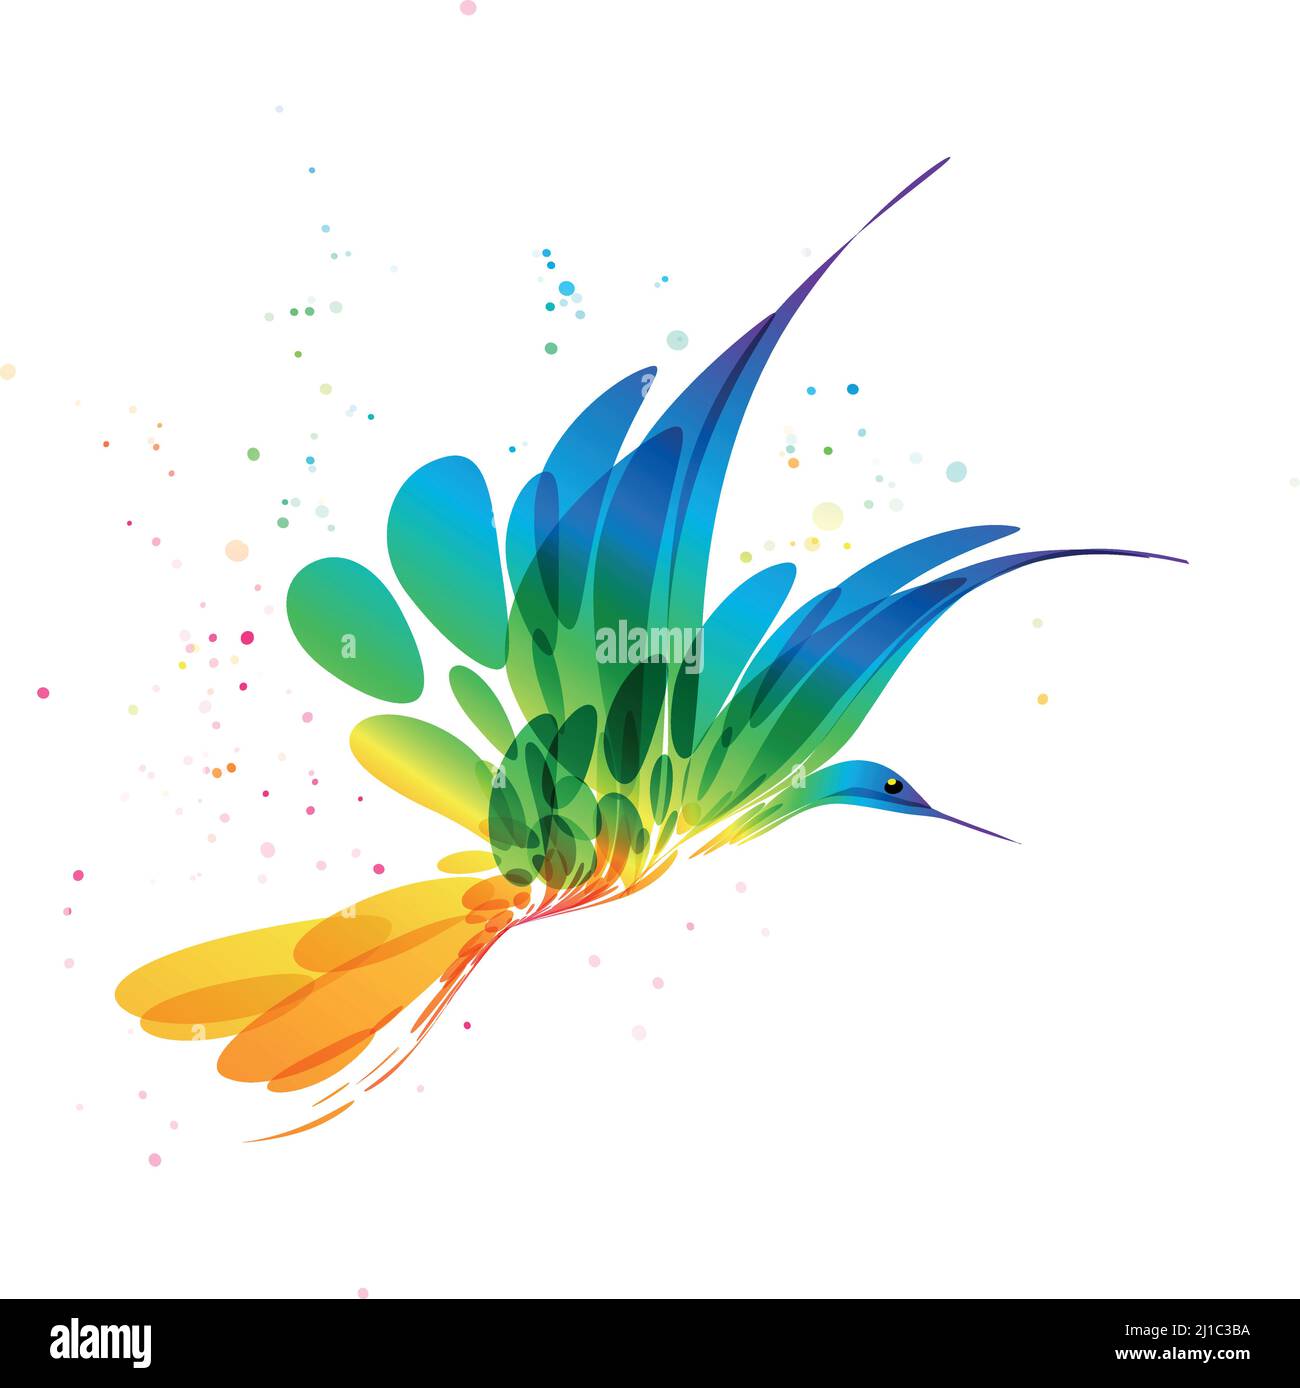 oiseau stylisé, oiseau fantaisie, oiseau abstrait dessiné, oiseau en vol, image vectorielle, oiseau multicolore Illustration de Vecteur